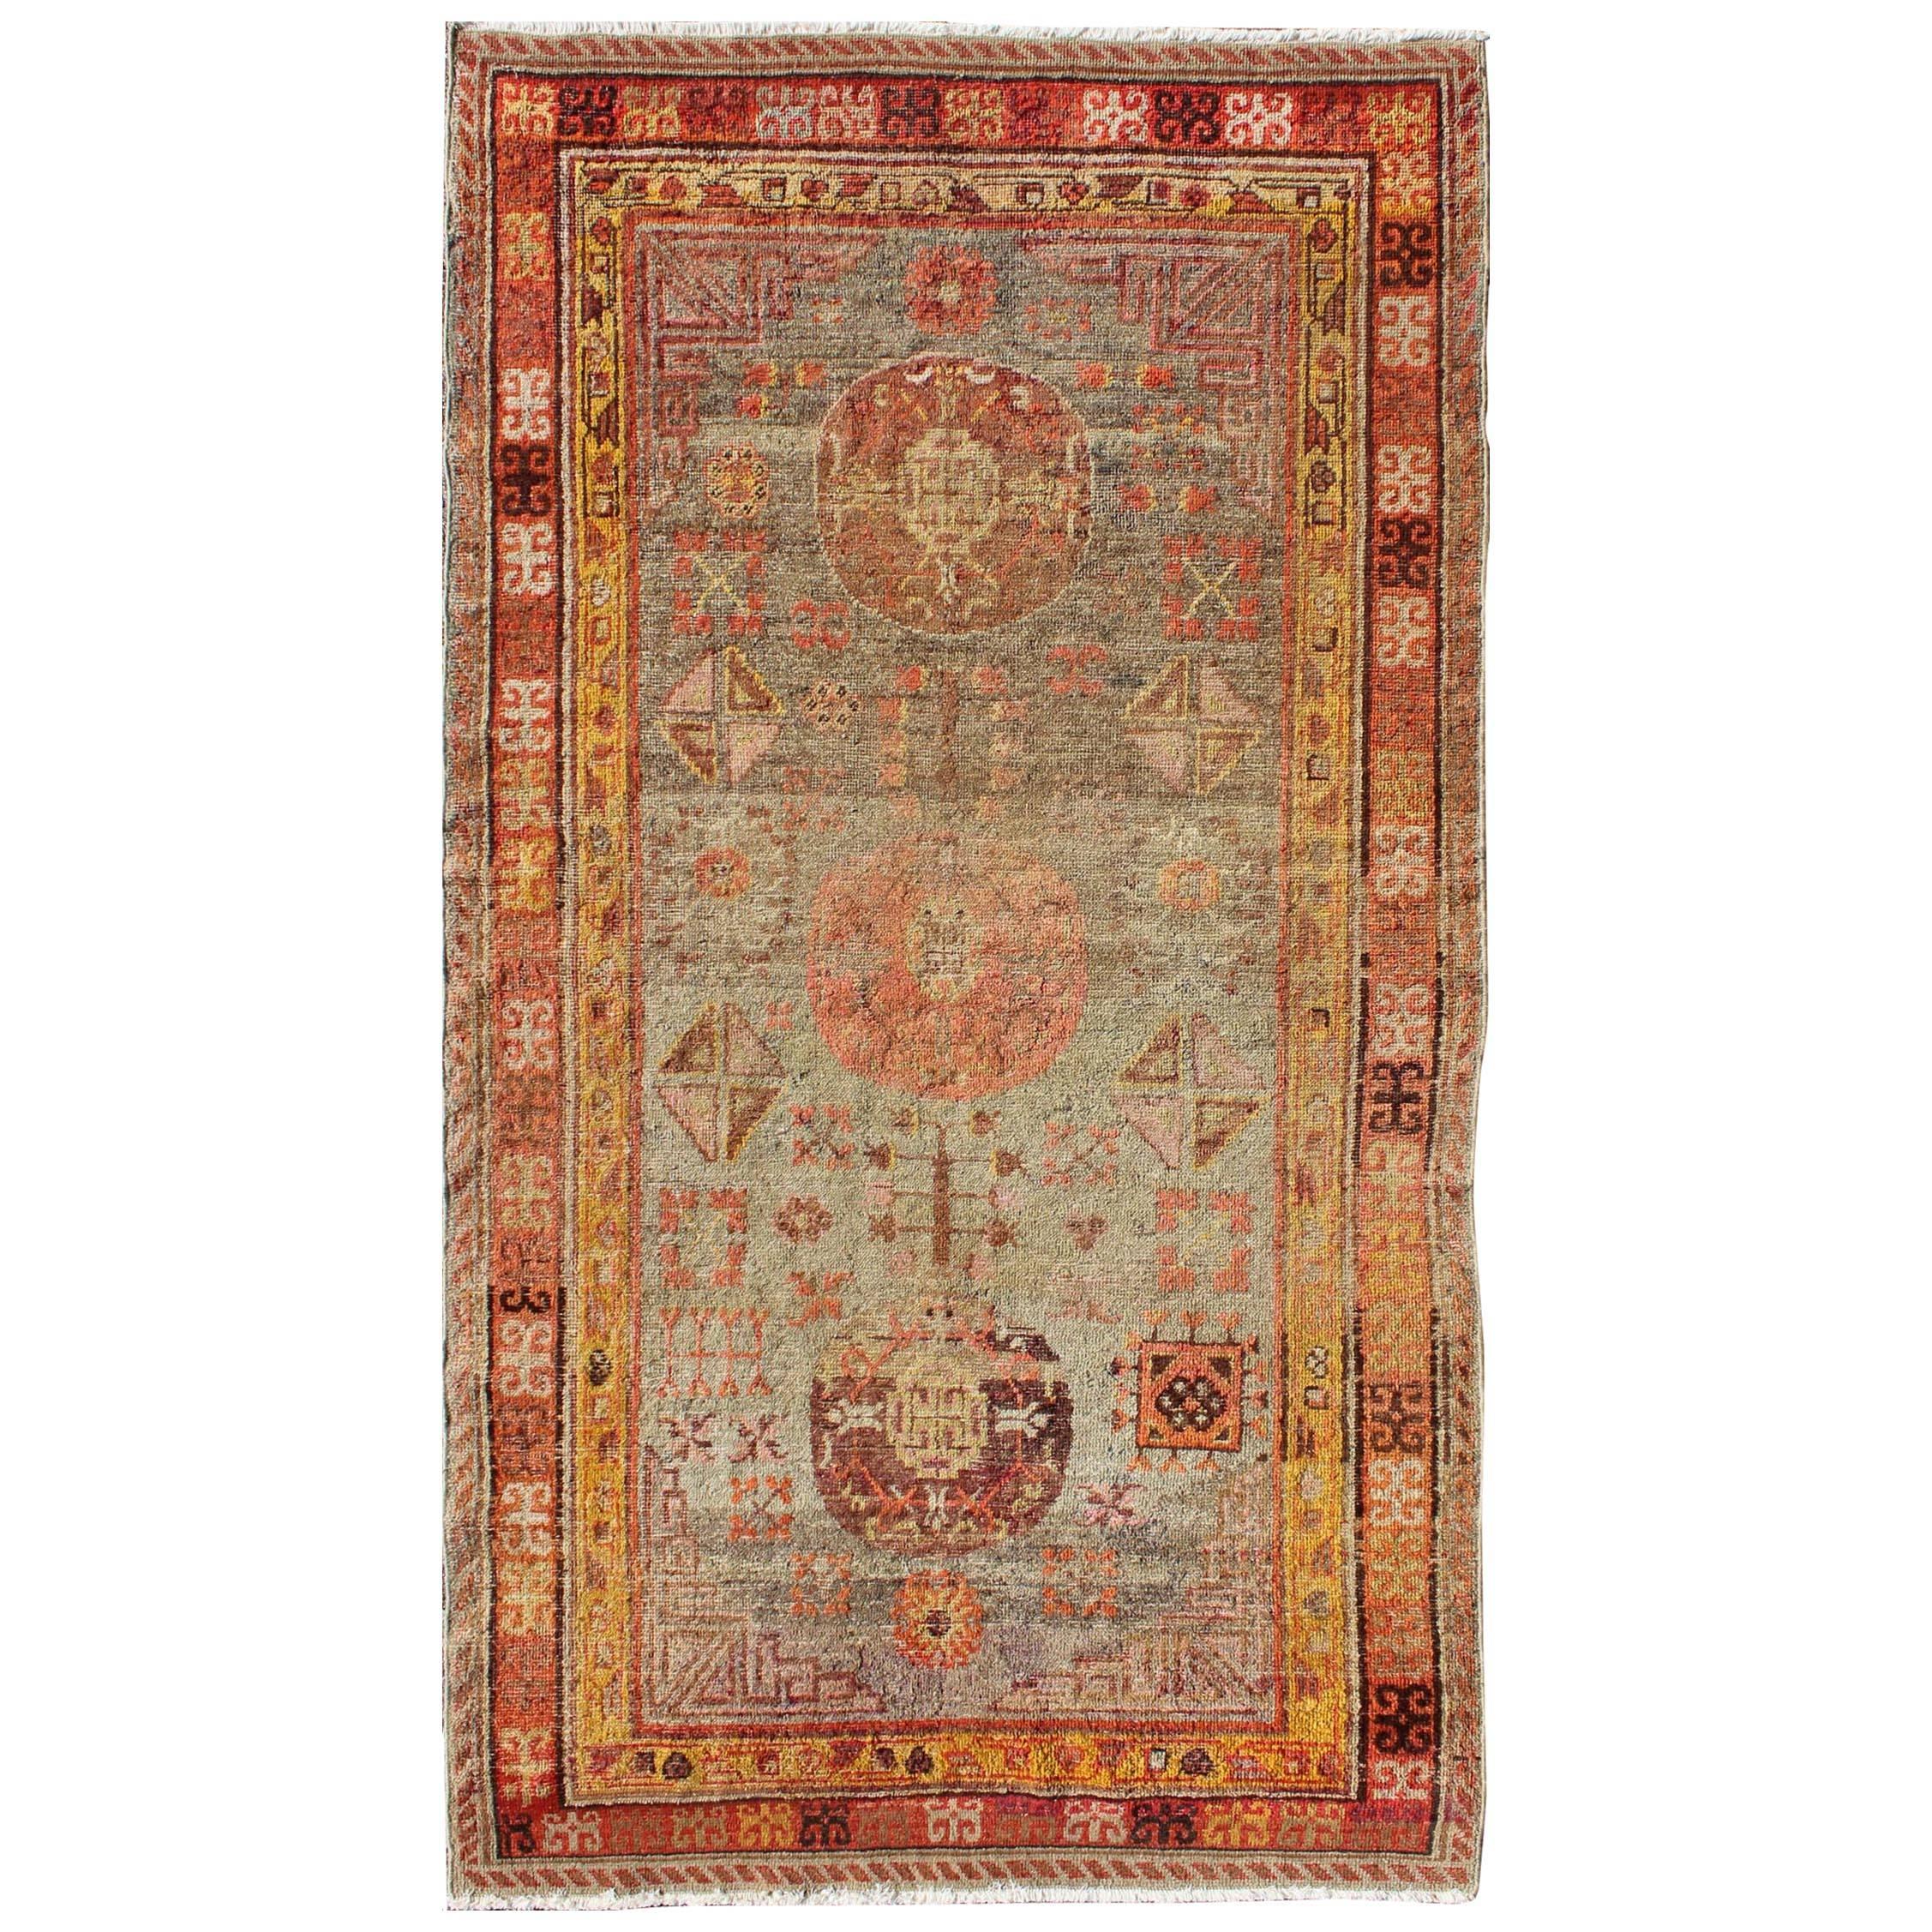 Tapis Khotan ancien d'Asie centrale à motifs géométriques floraux